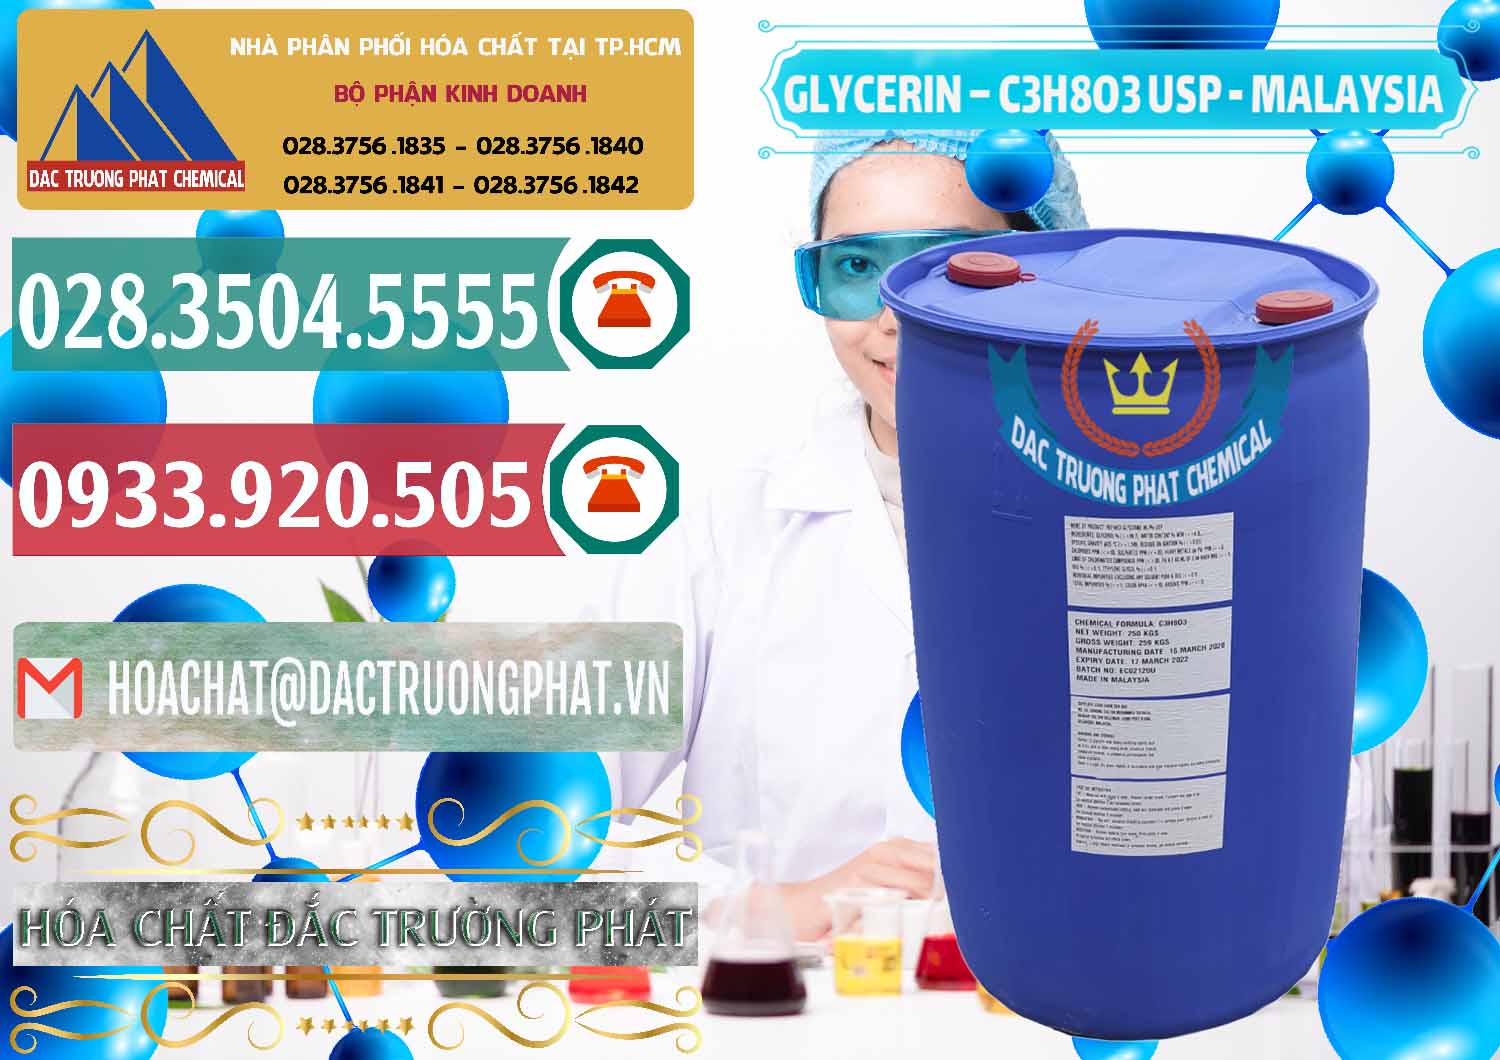 Công ty bán và phân phối Glycerin – C3H8O3 USP Malaysia - 0233 - Công ty phân phối và cung ứng hóa chất tại TP.HCM - muabanhoachat.vn